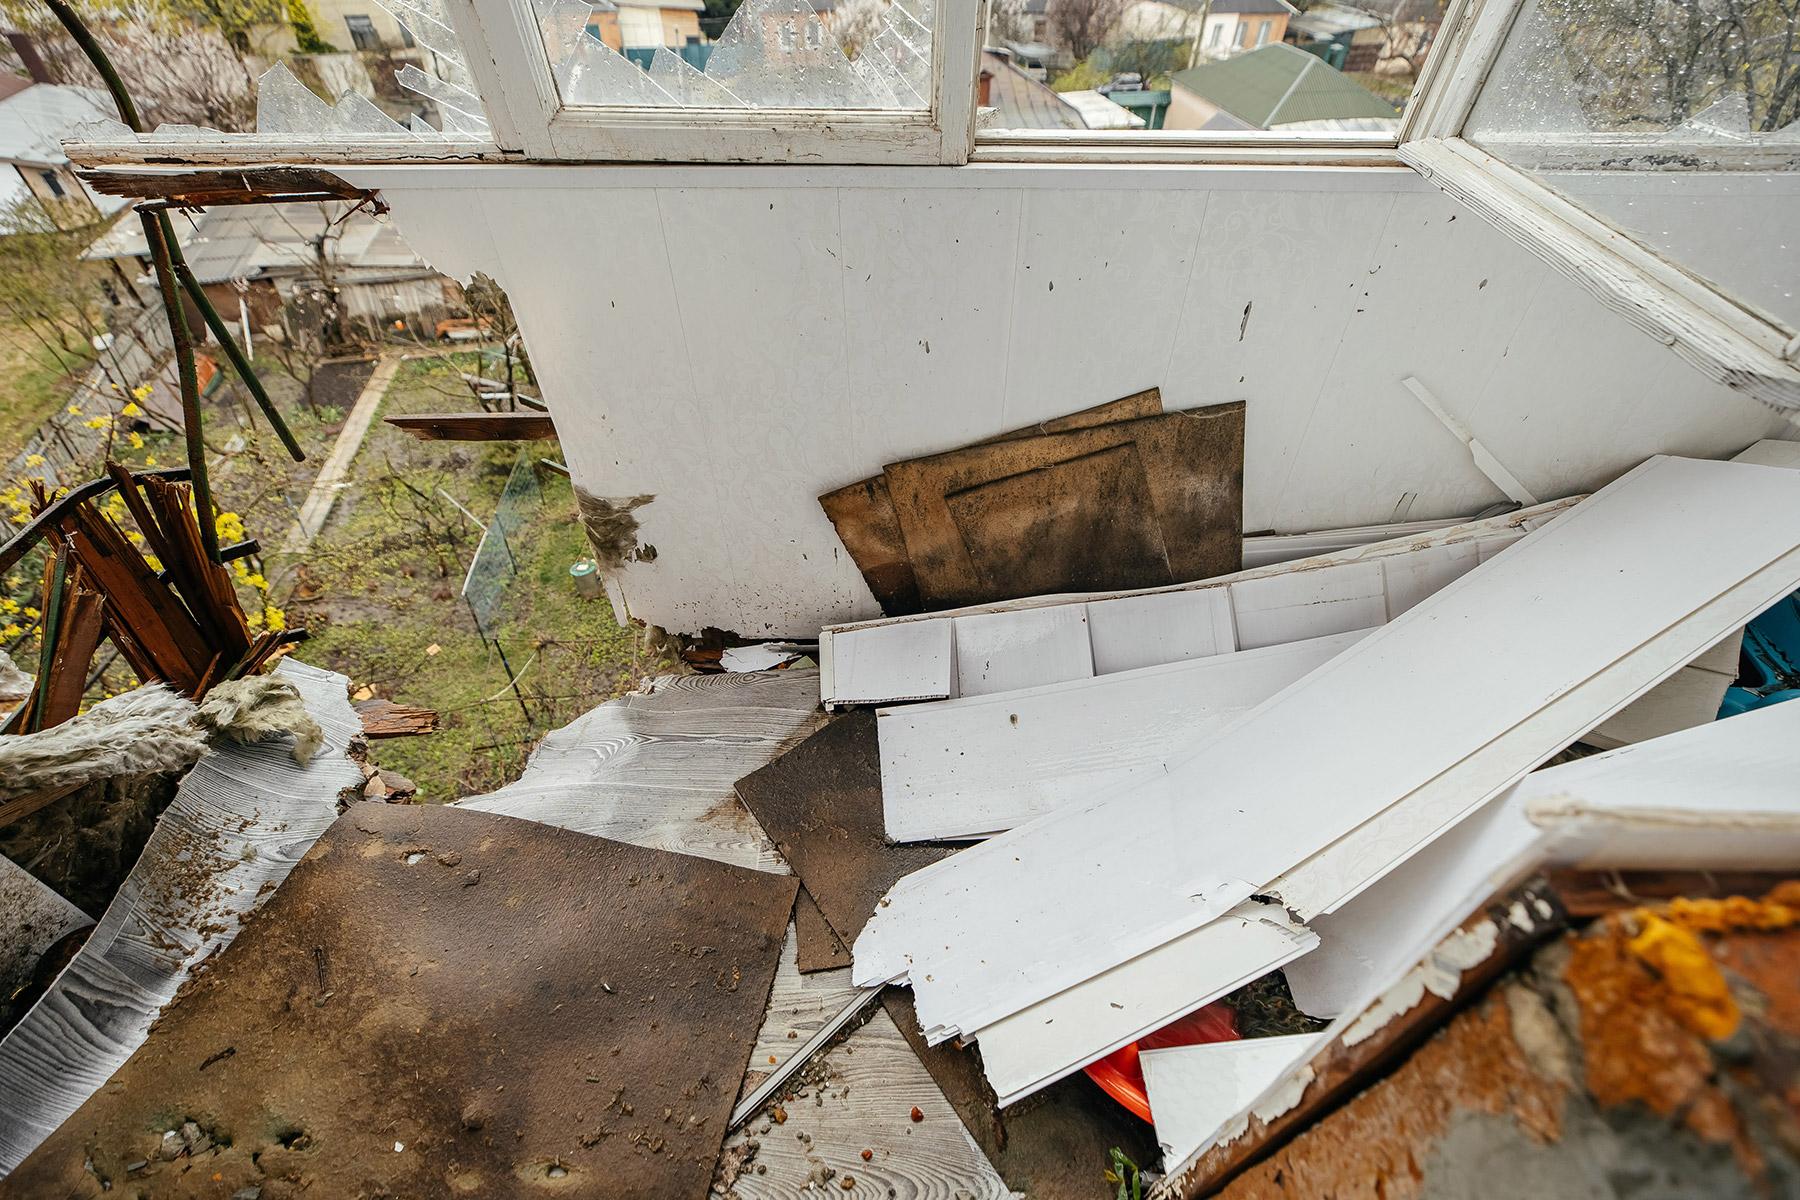 Edificios destruidos en el barrio Saltivka de Kharkiv. La FLM ha lanzado una licitación inicial para la rehabilitación de 50 apartamentos y planea renovar otros 500 pisos más adelante, para que las familias desplazadas en la ciudad de Kharkiv puedan regresar a sus hogares. Foto: FLM/ Anantoliy Nazarenko